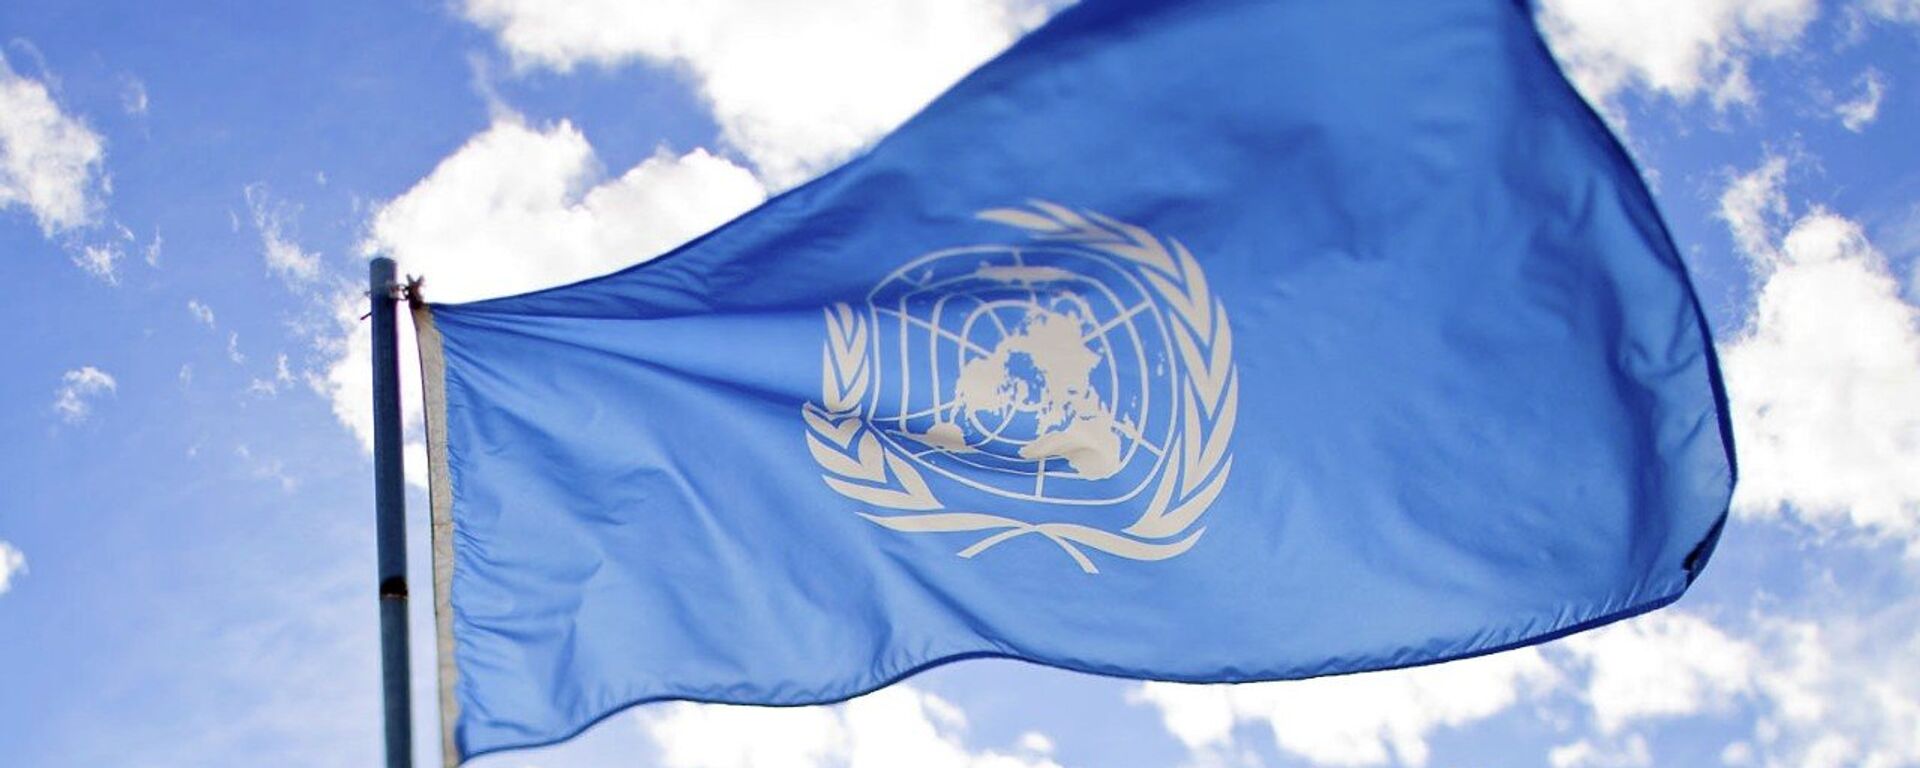 La bandera de la ONU - Sputnik Mundo, 1920, 26.02.2021